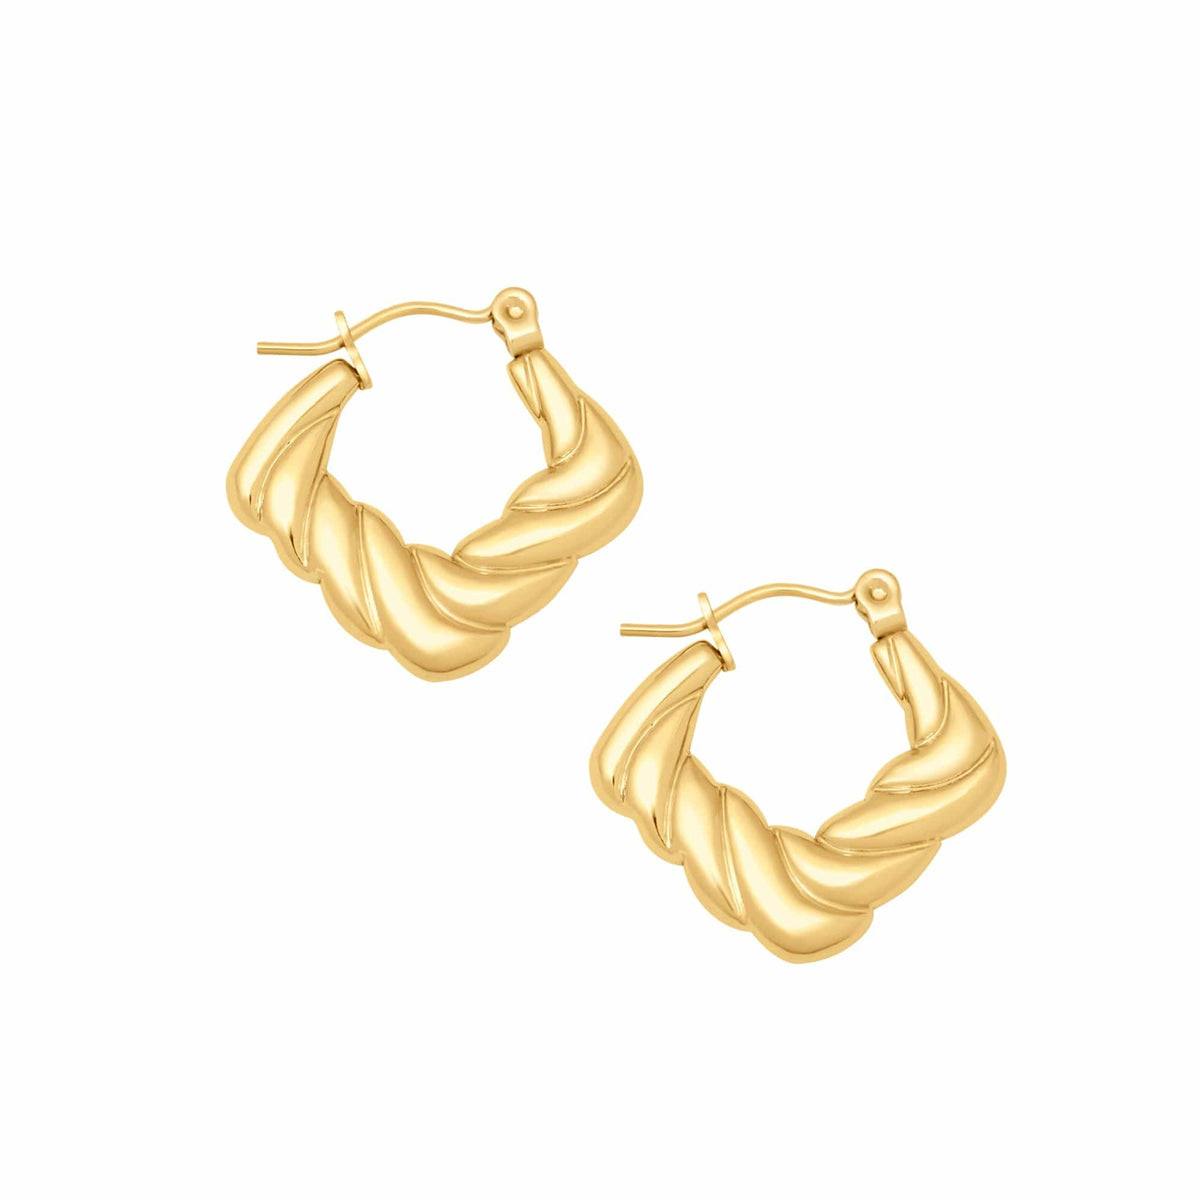 BohoMoon Stainless Steel Jax Hoop Earrings Gold